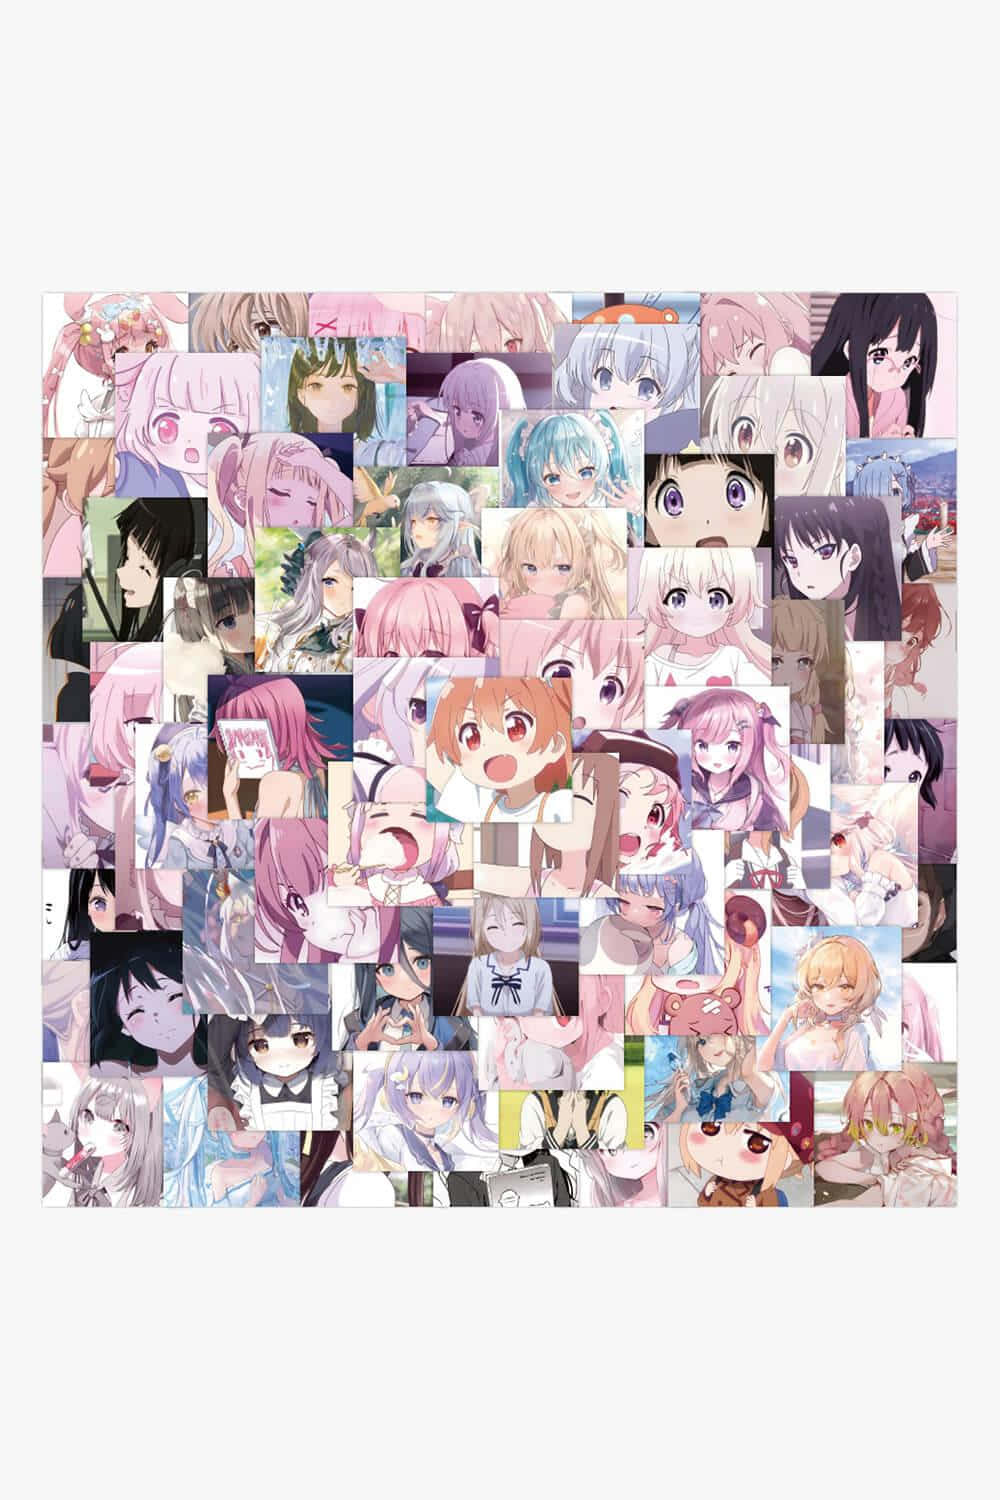 Anime folder icons 6, AmagamiTsukasa, female anime character folder icon,  png | PNGEgg